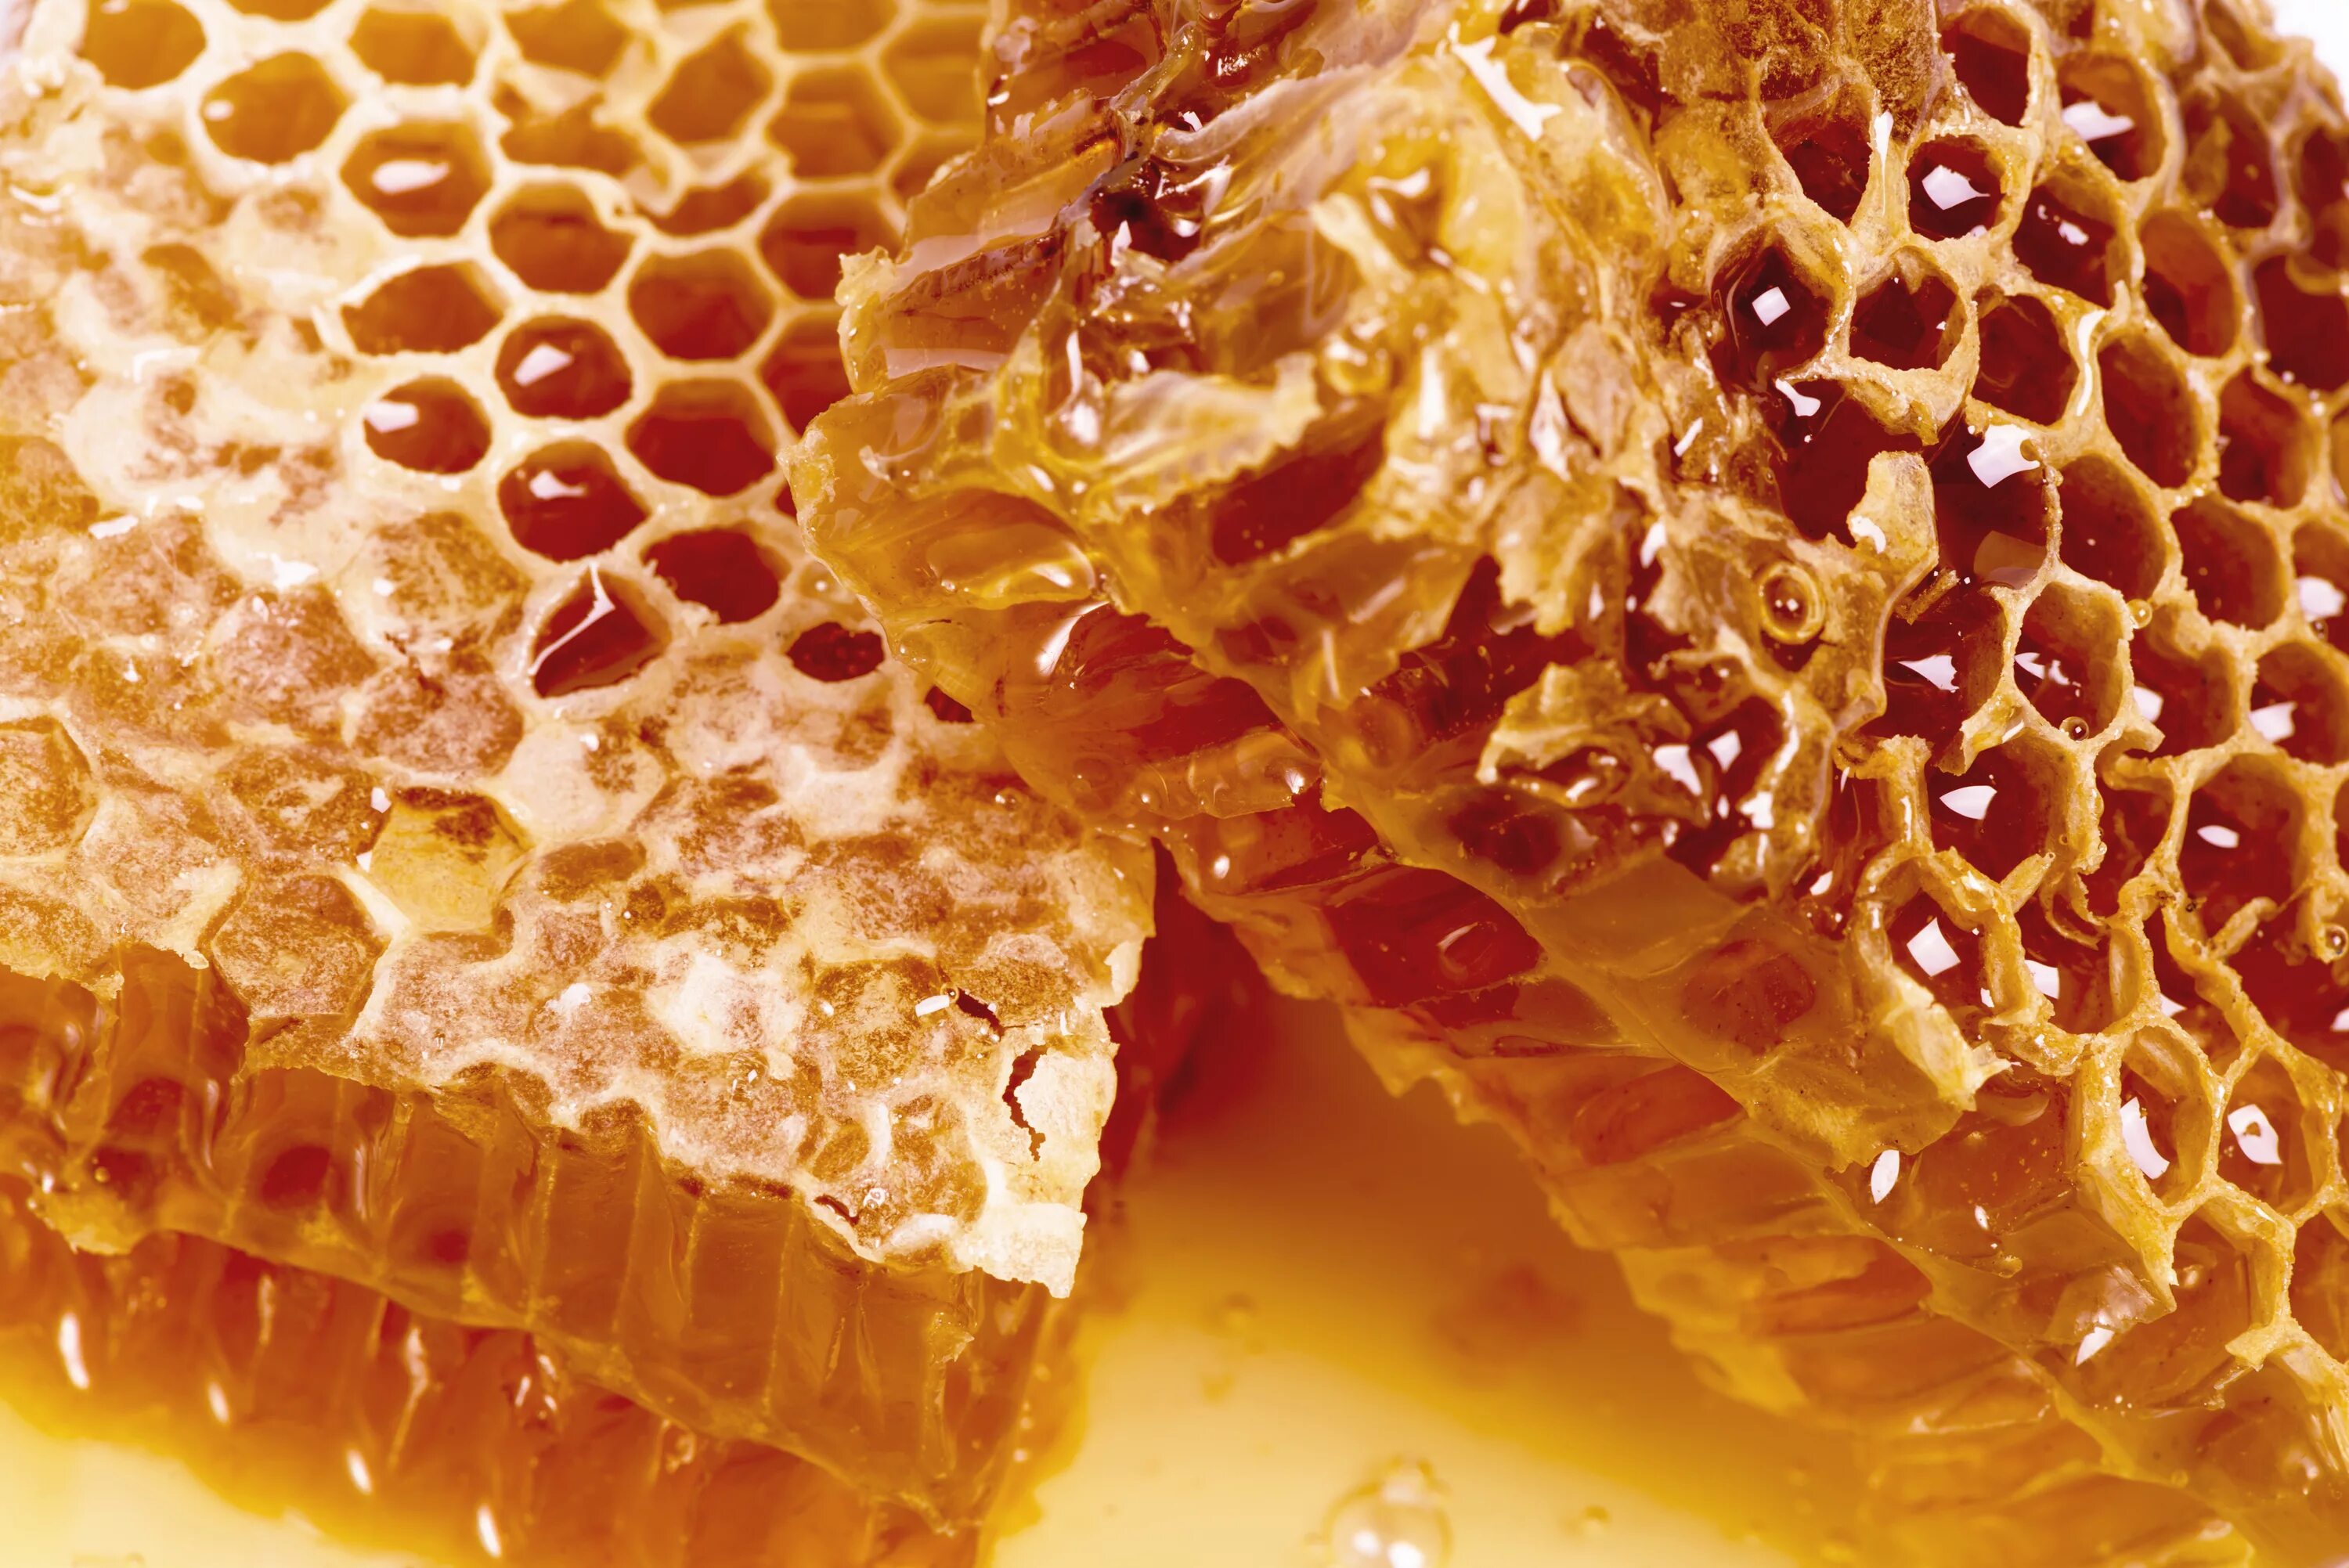 Воск в сотах. Мёд в сотах. Соты пчелиные. Пчелиные соты с медом. Пчелиный воск.